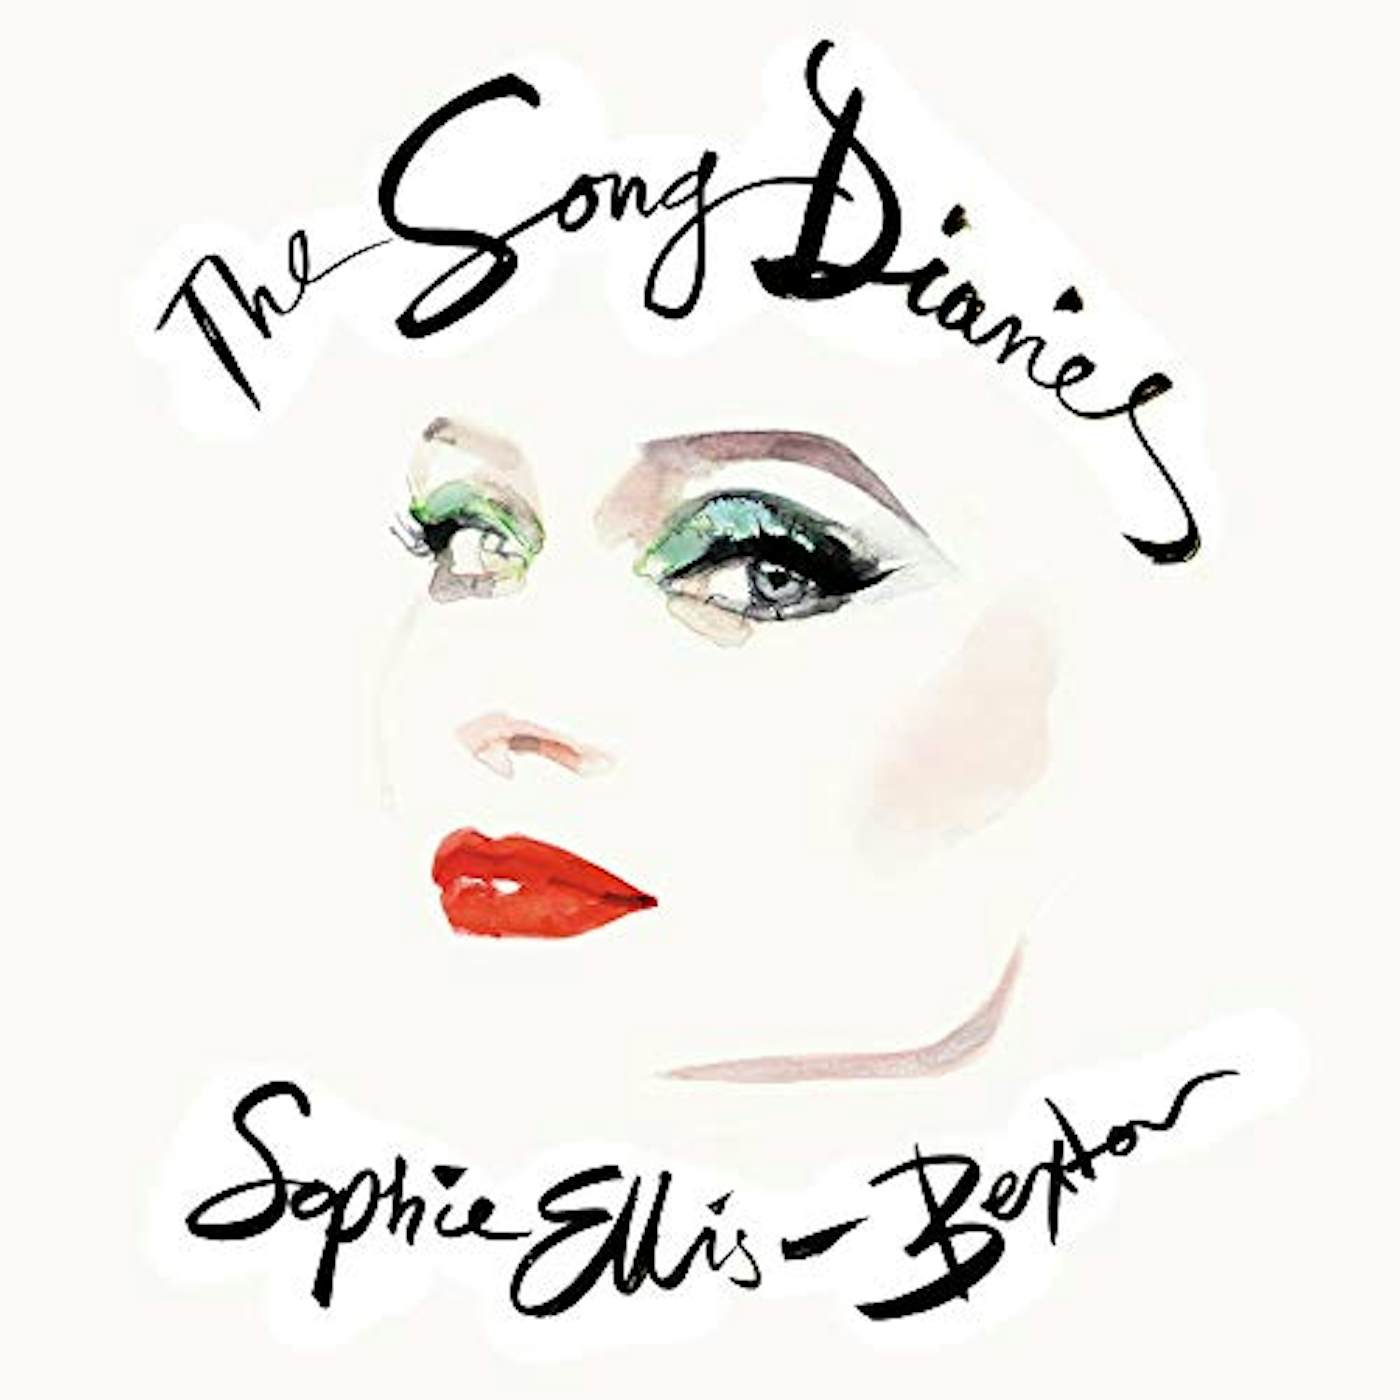 Sophie Ellis-Bextor SONG DIARIES Vinyl Record